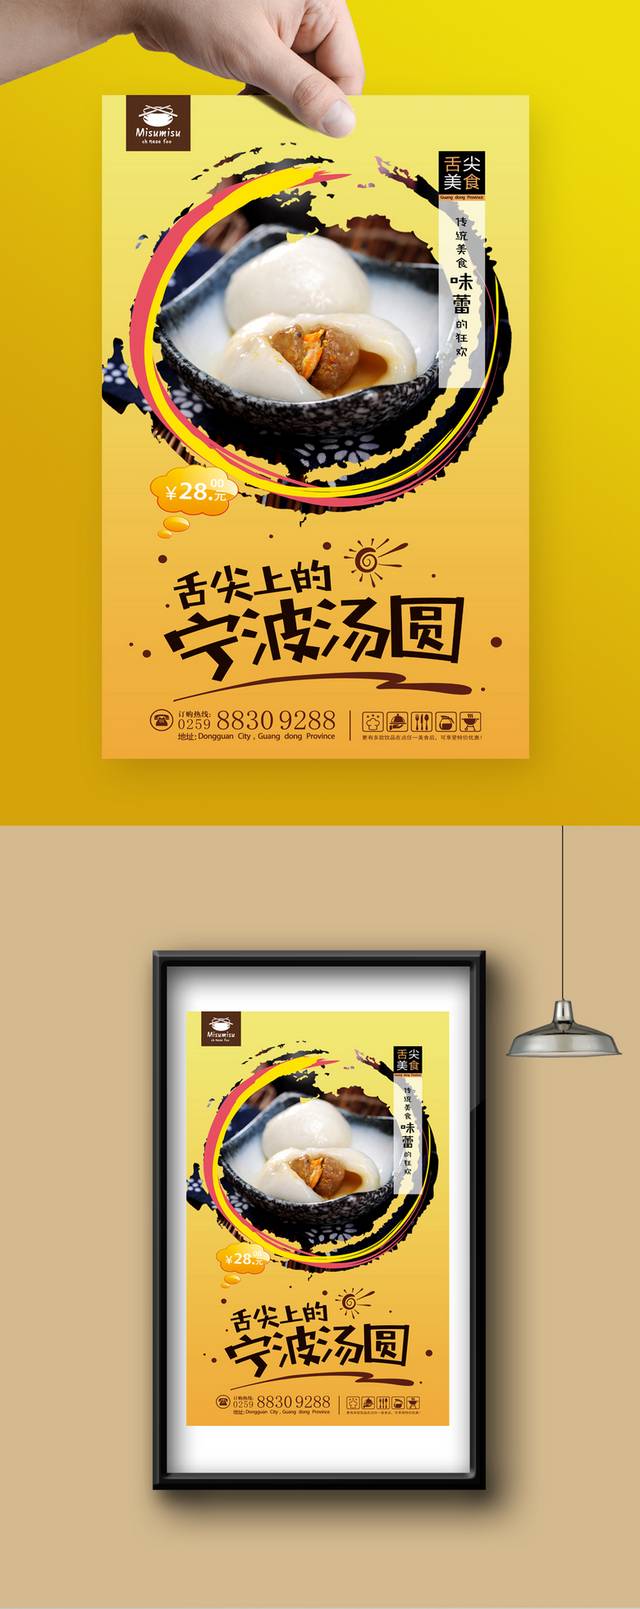 经典美食宁波汤圆宣传海报设计